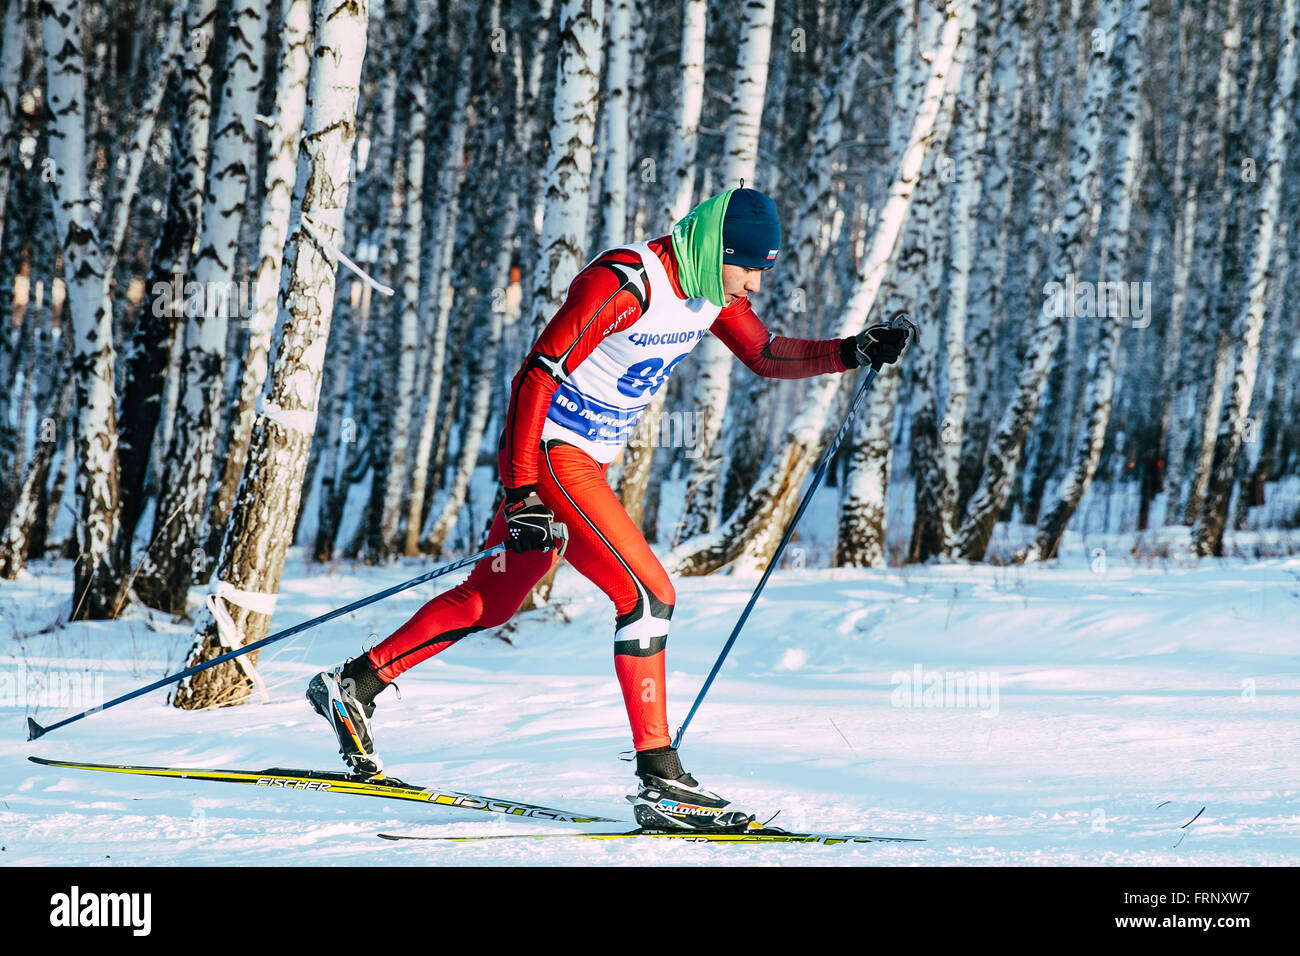 La skieuse gros plan hiver forêt de bouleaux athlète course de sprint en style classique au cours du championnat de France de cross-country ski Banque D'Images